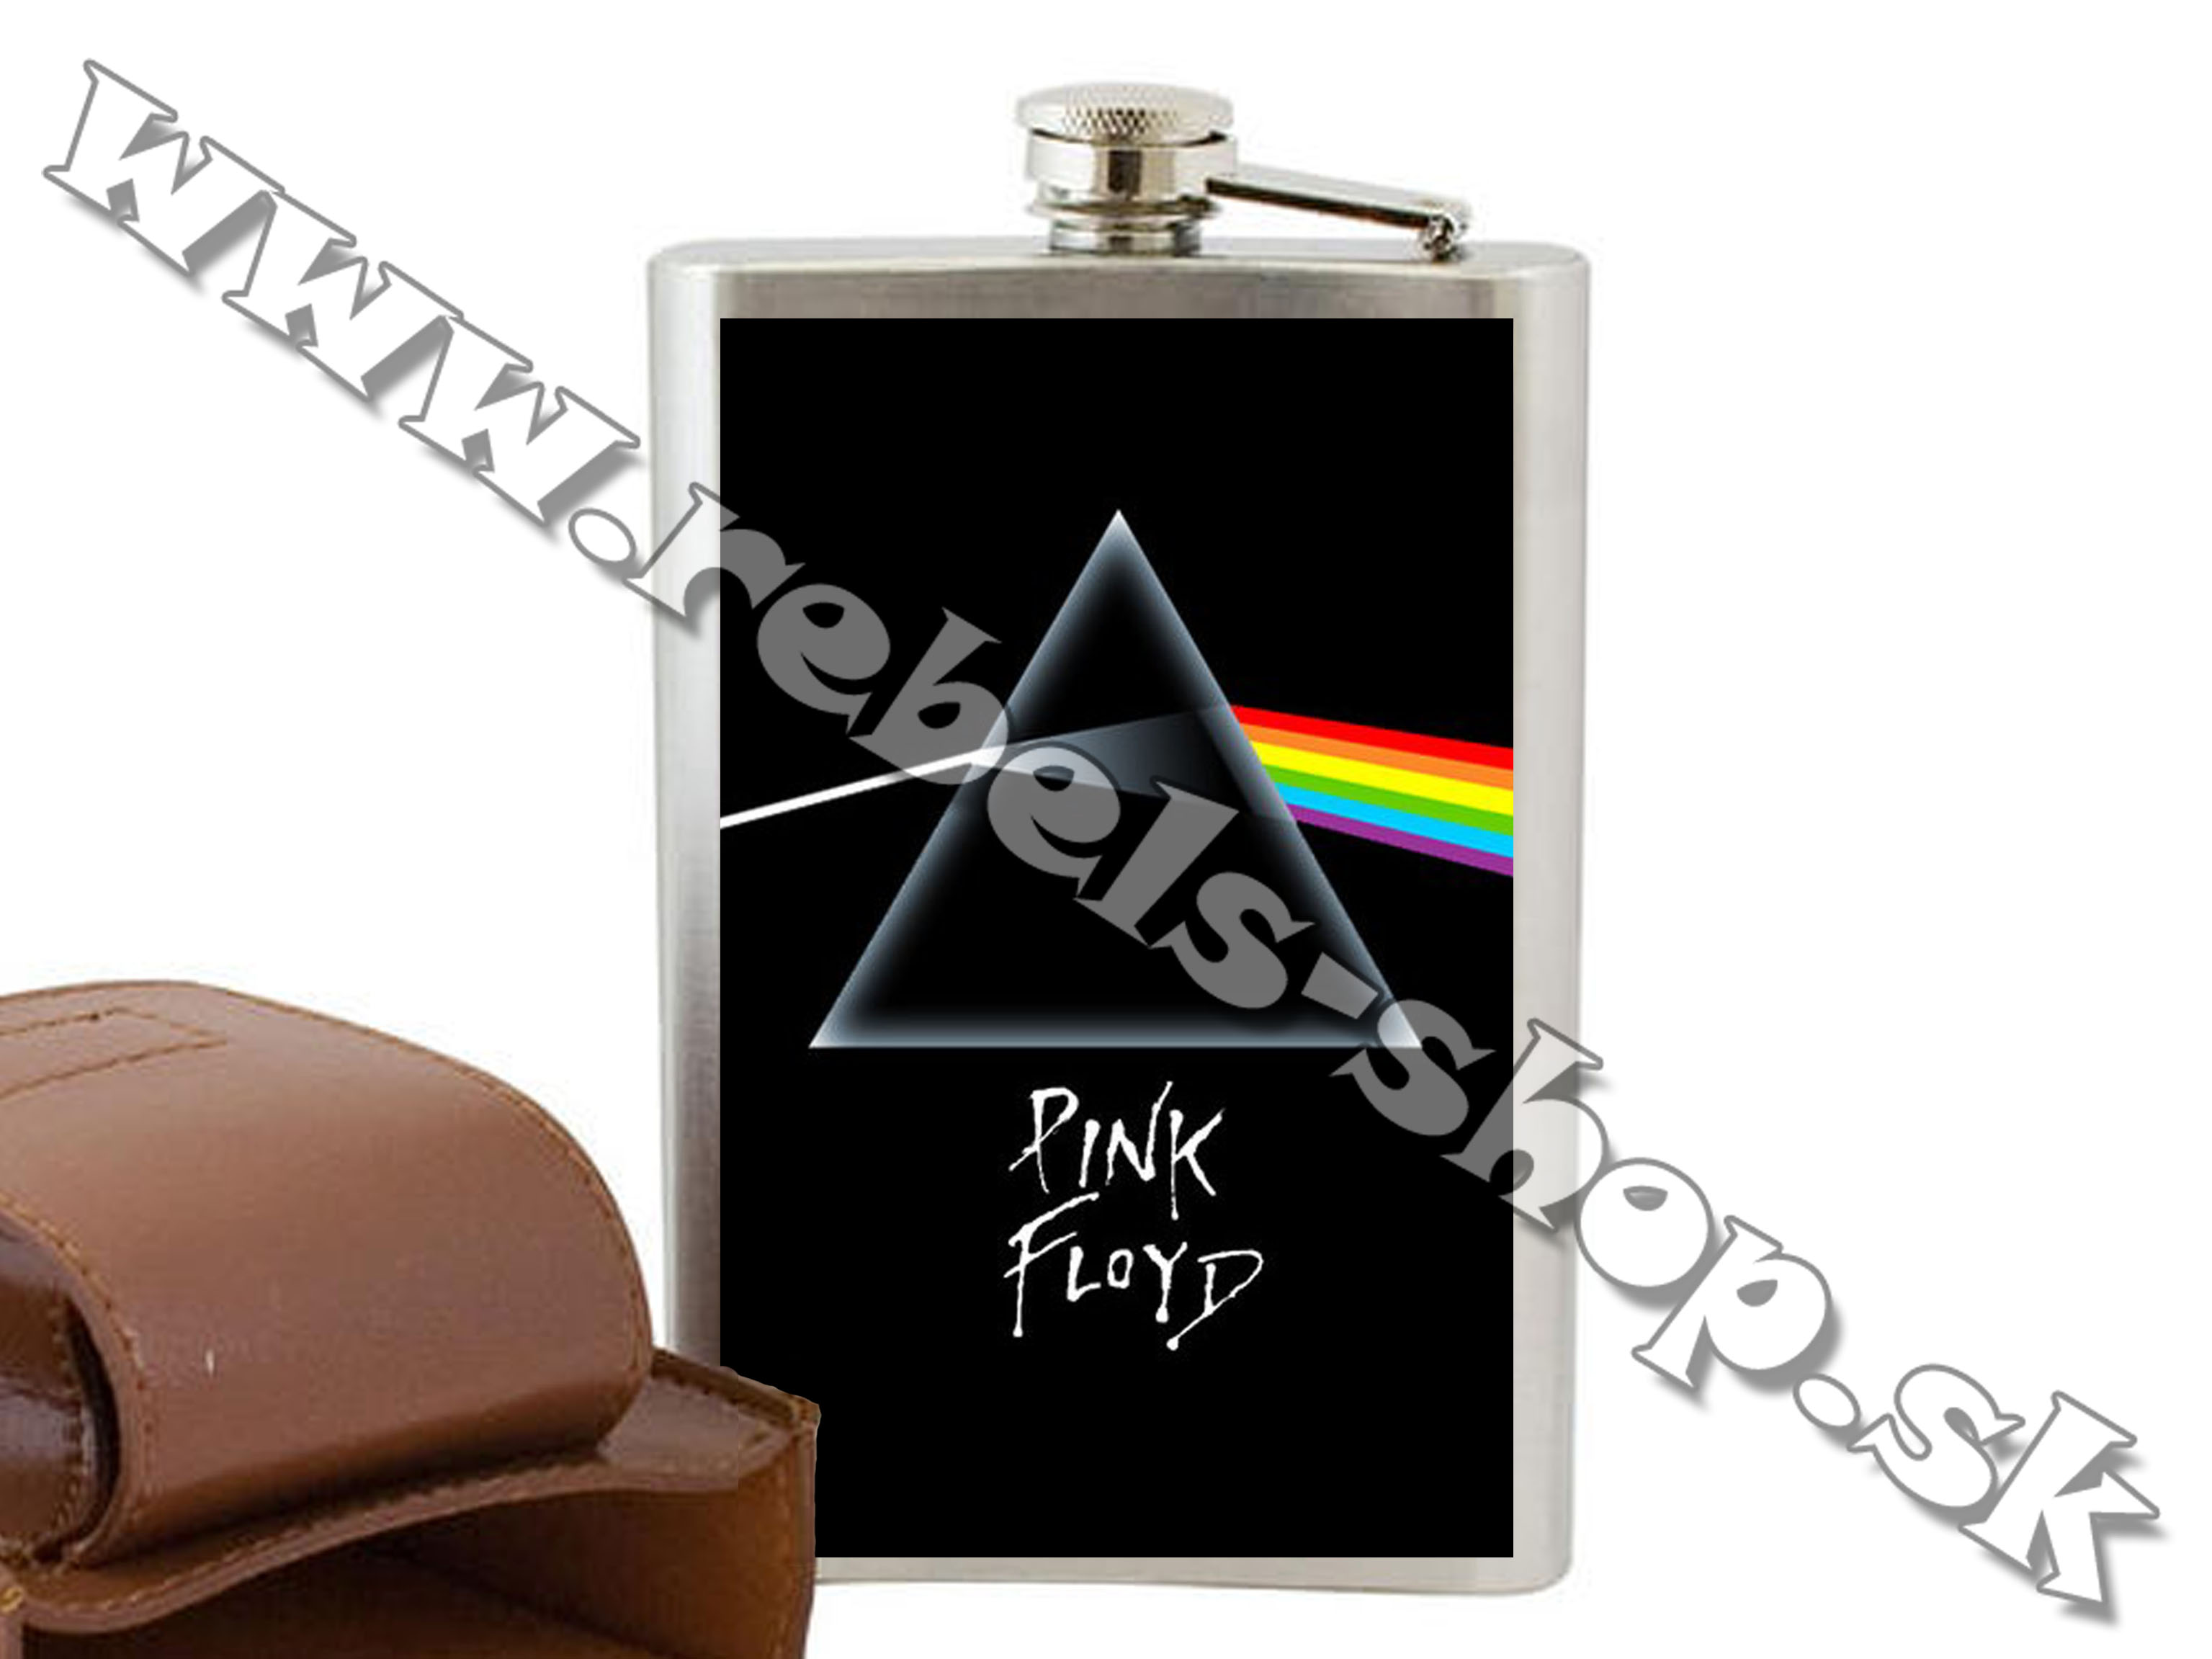 Ploskačka "Pink Floyd"